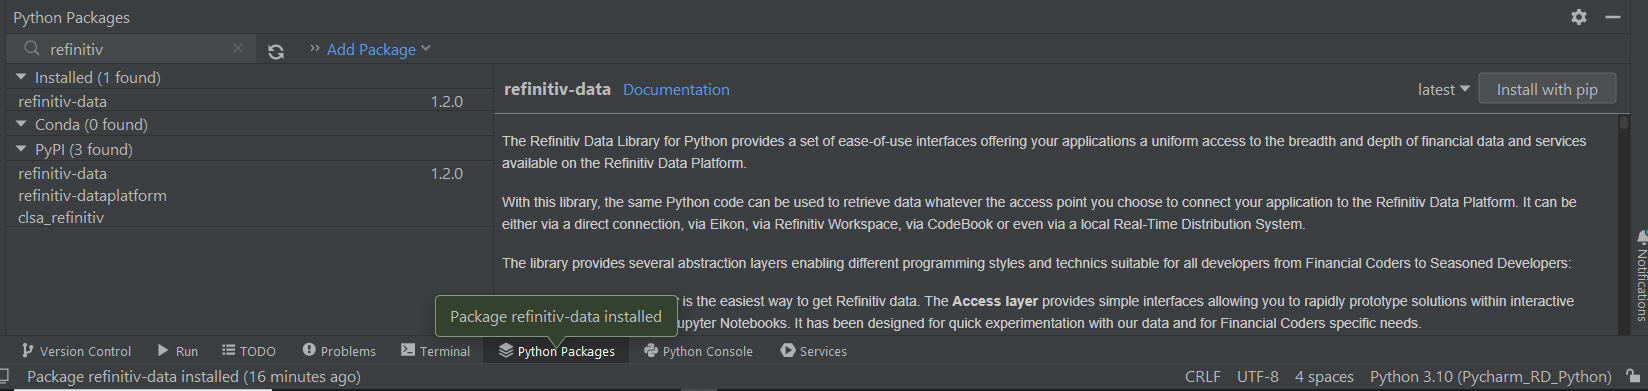 PyCharm install refinitiv-data 2